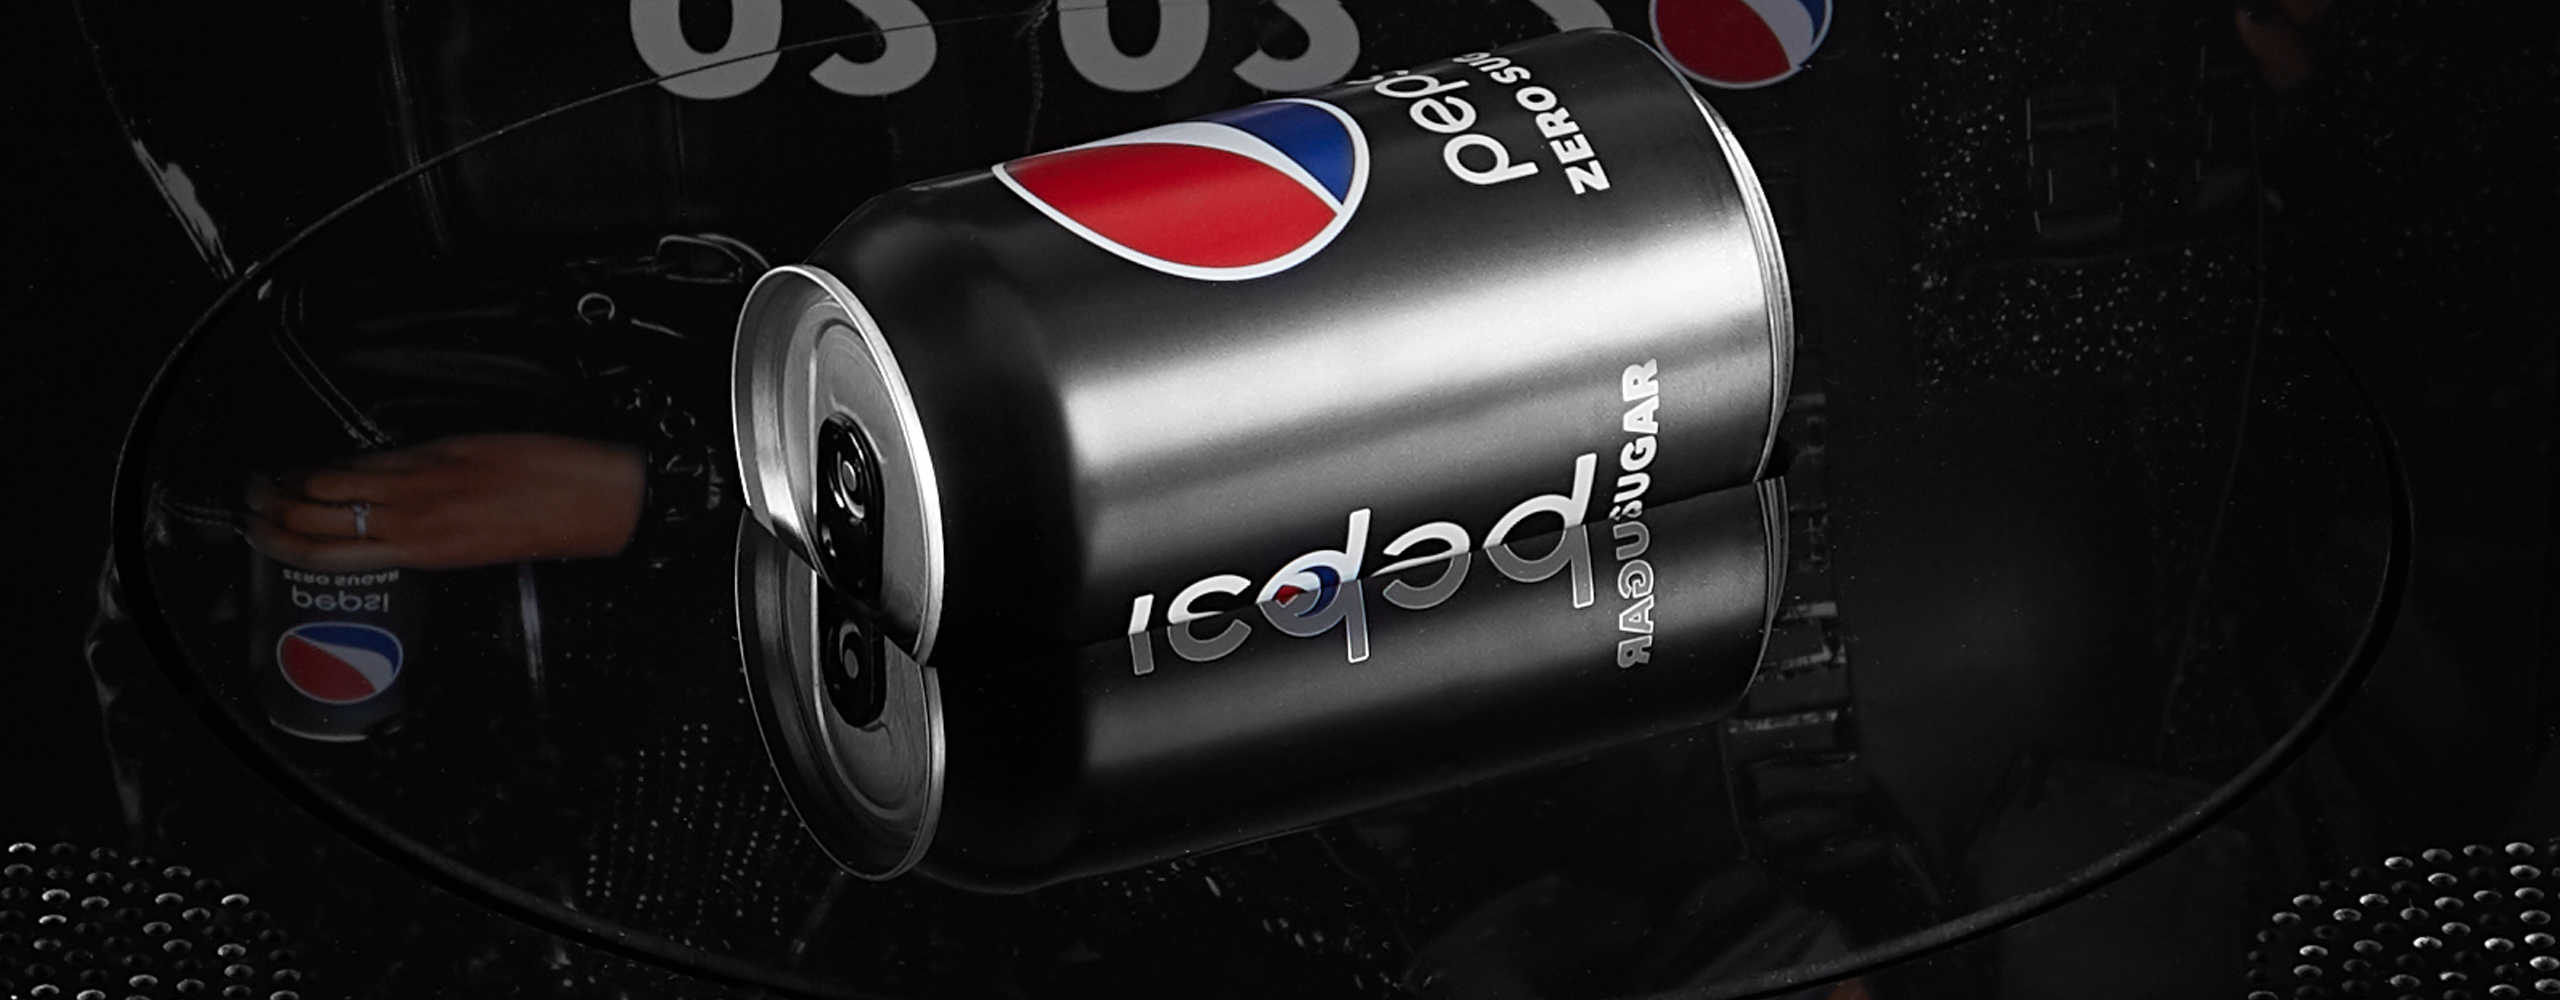 Banner of Pepsi "Black-Listed" Super Bowl Kit